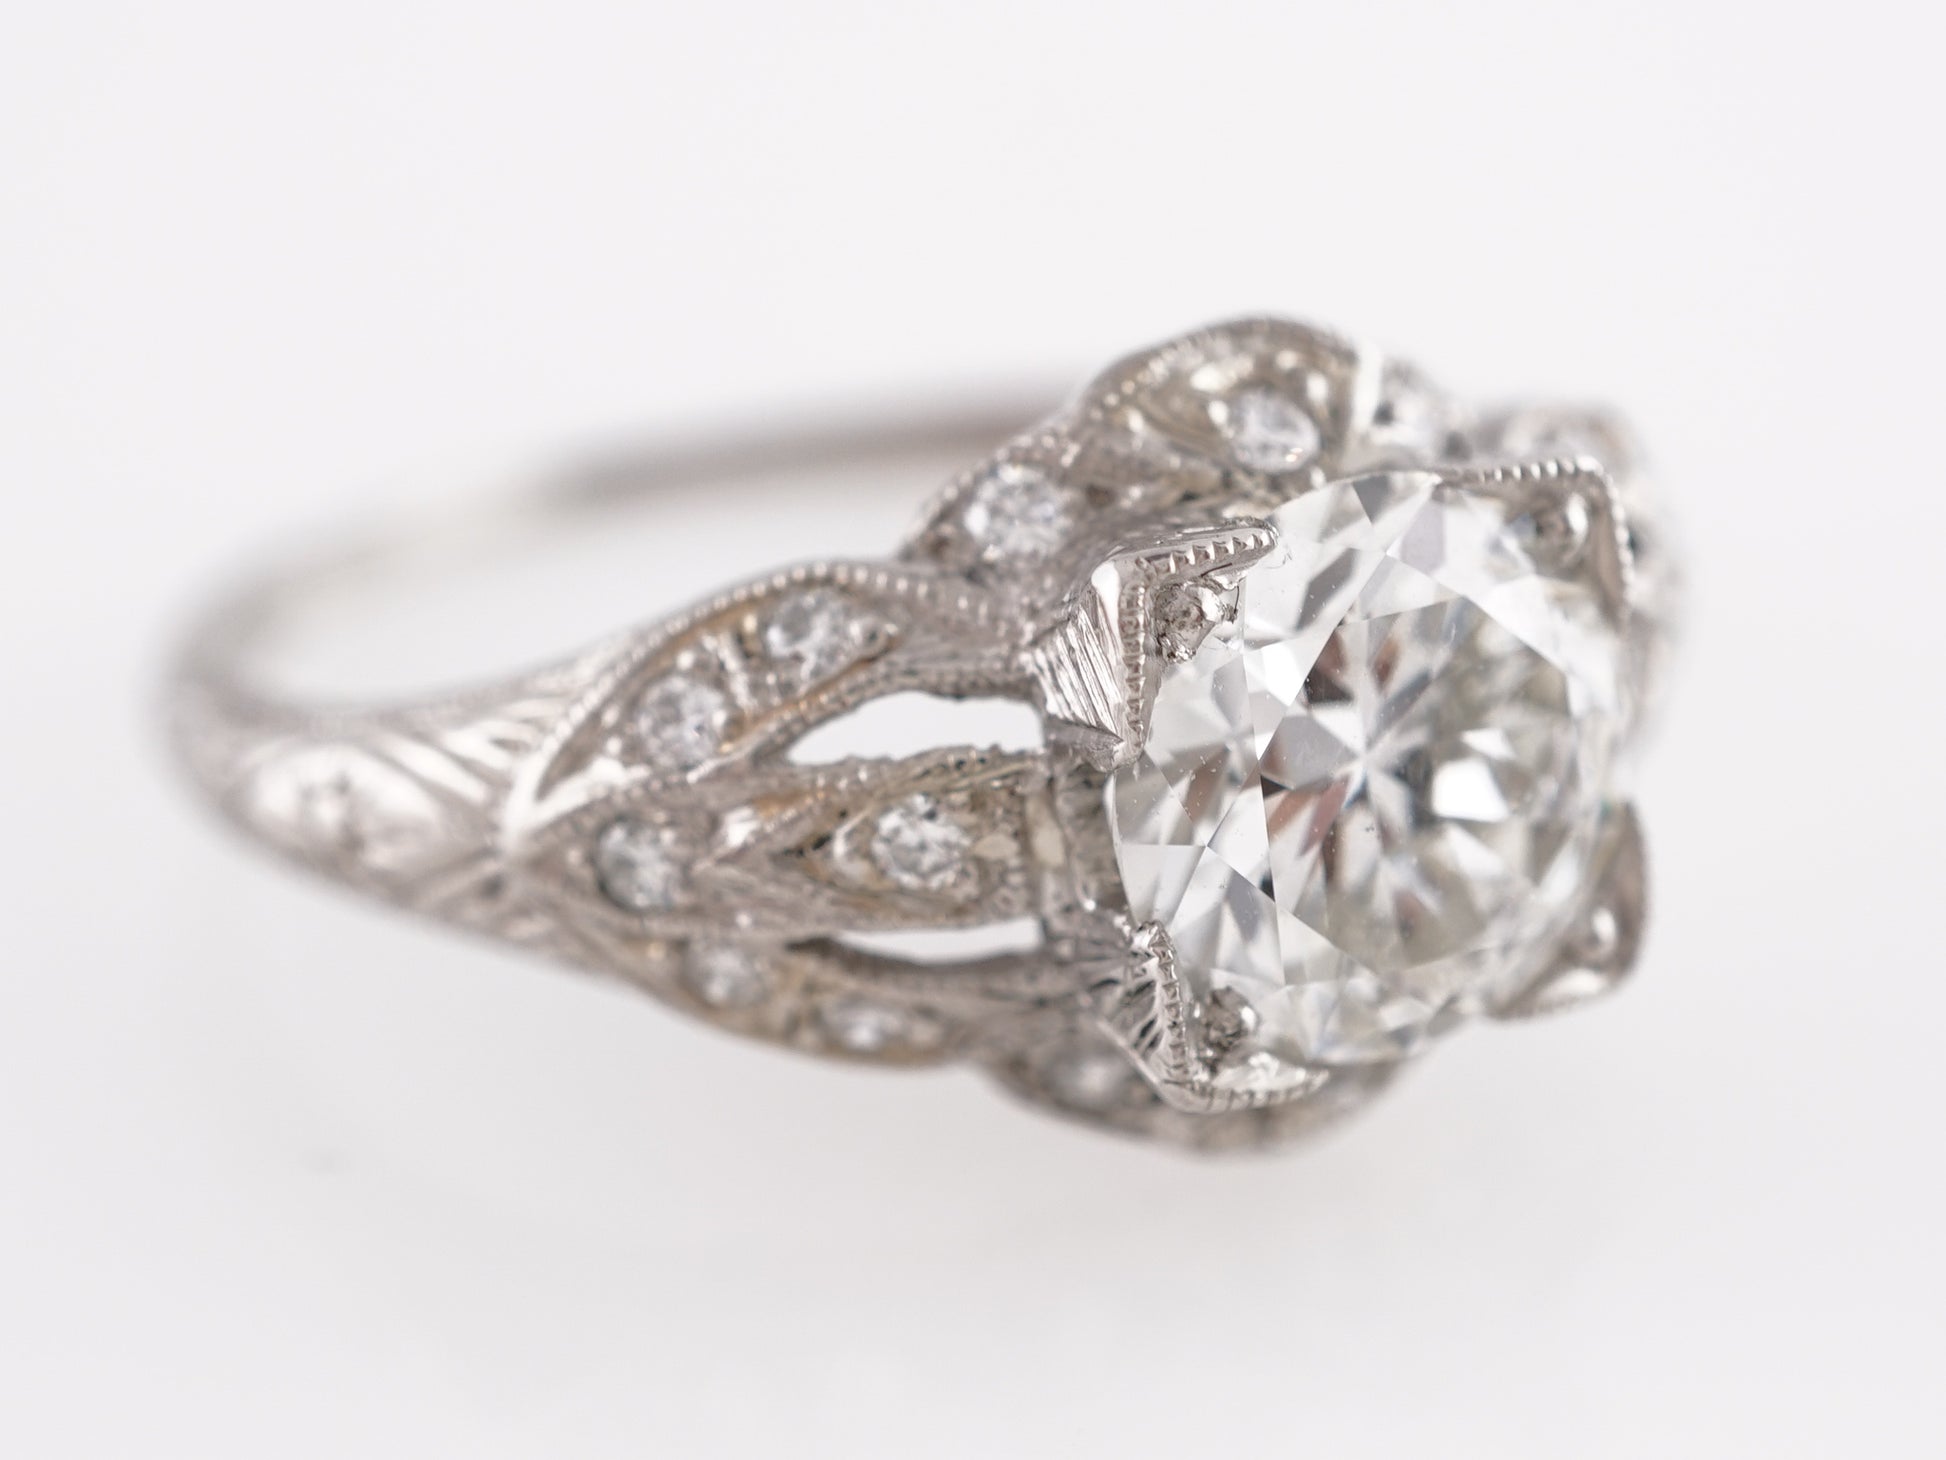 1.16 Art Deco European Cut Diamond Engagement Ring in Platinum